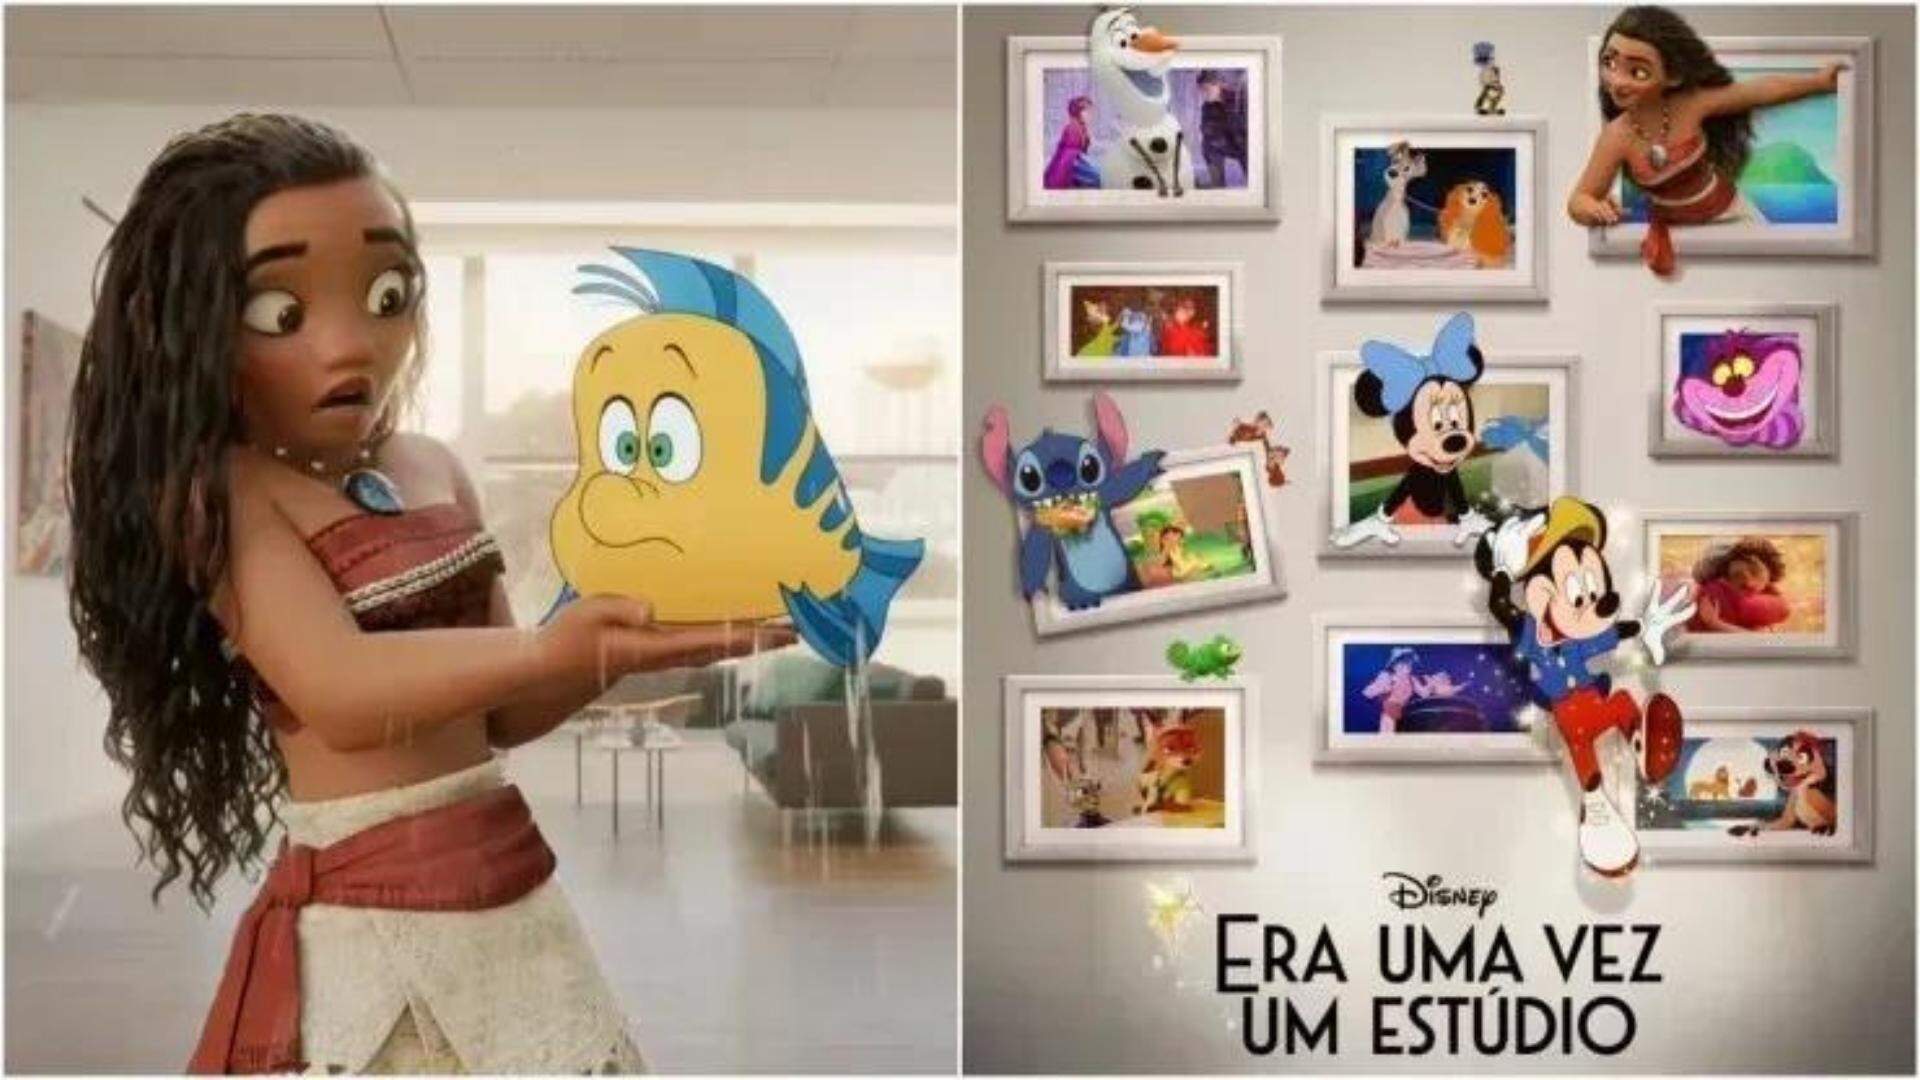 Disney 100 anos: Novo curta-metragem emociona fãs e reúne 543 personagens que marcaram gerações - Metropolitana FM